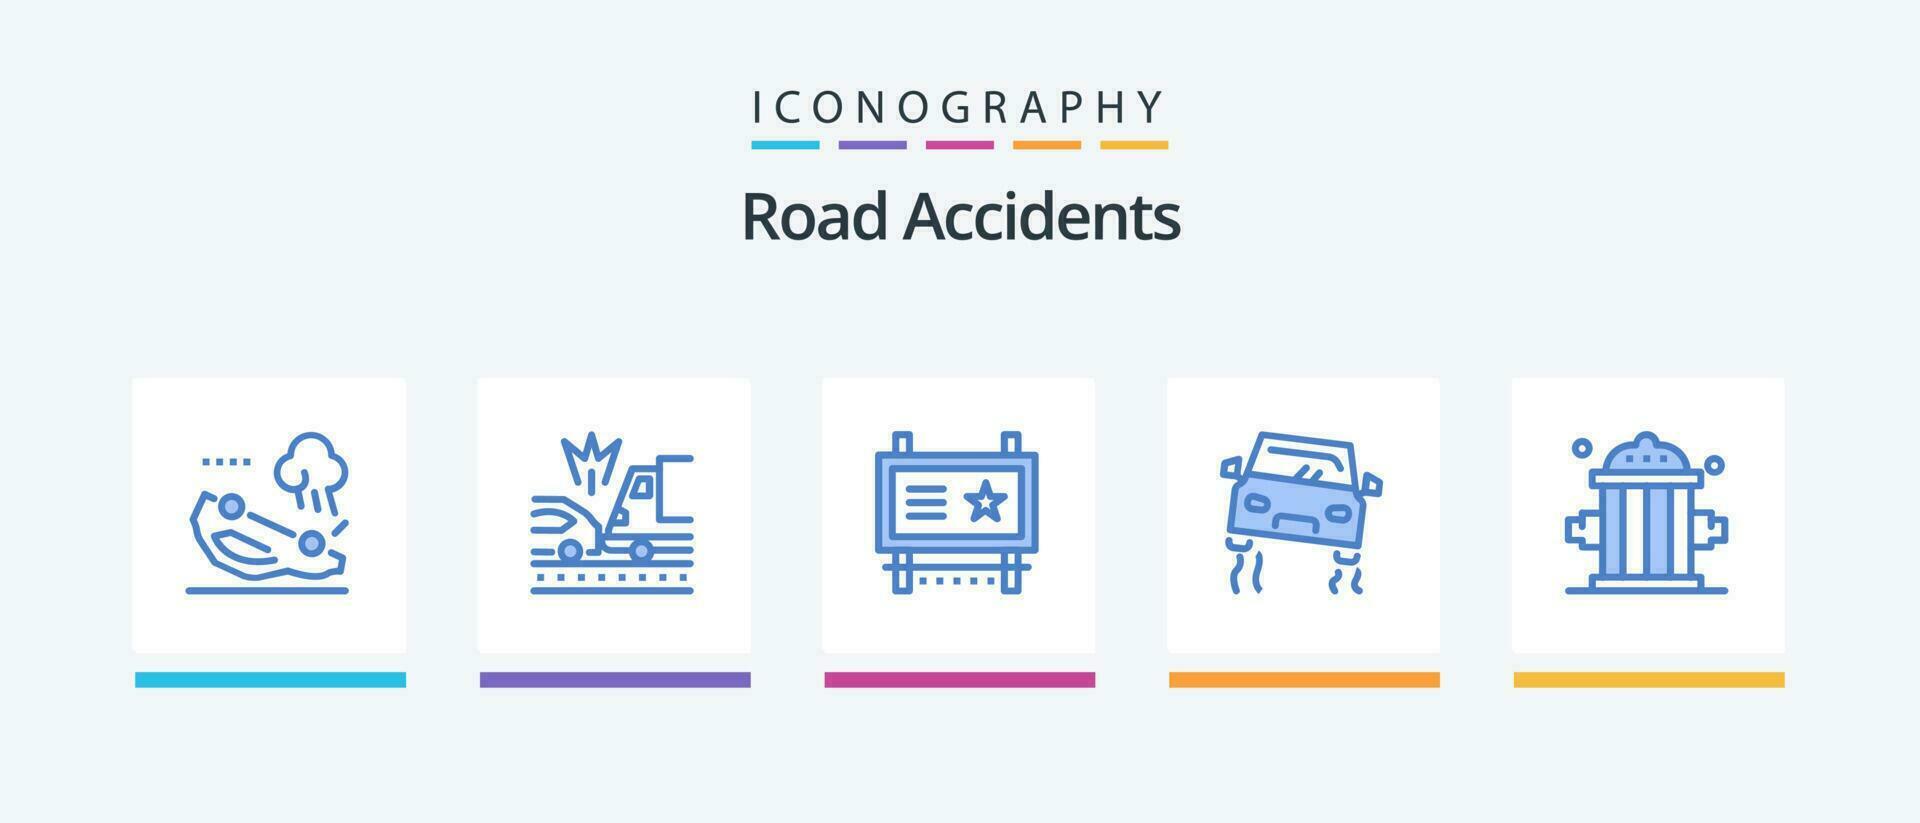 la carretera accidentes azul 5 5 icono paquete incluso bombero. la carretera. anuncio tablero. coche. la carretera publicidad. creativo íconos diseño vector